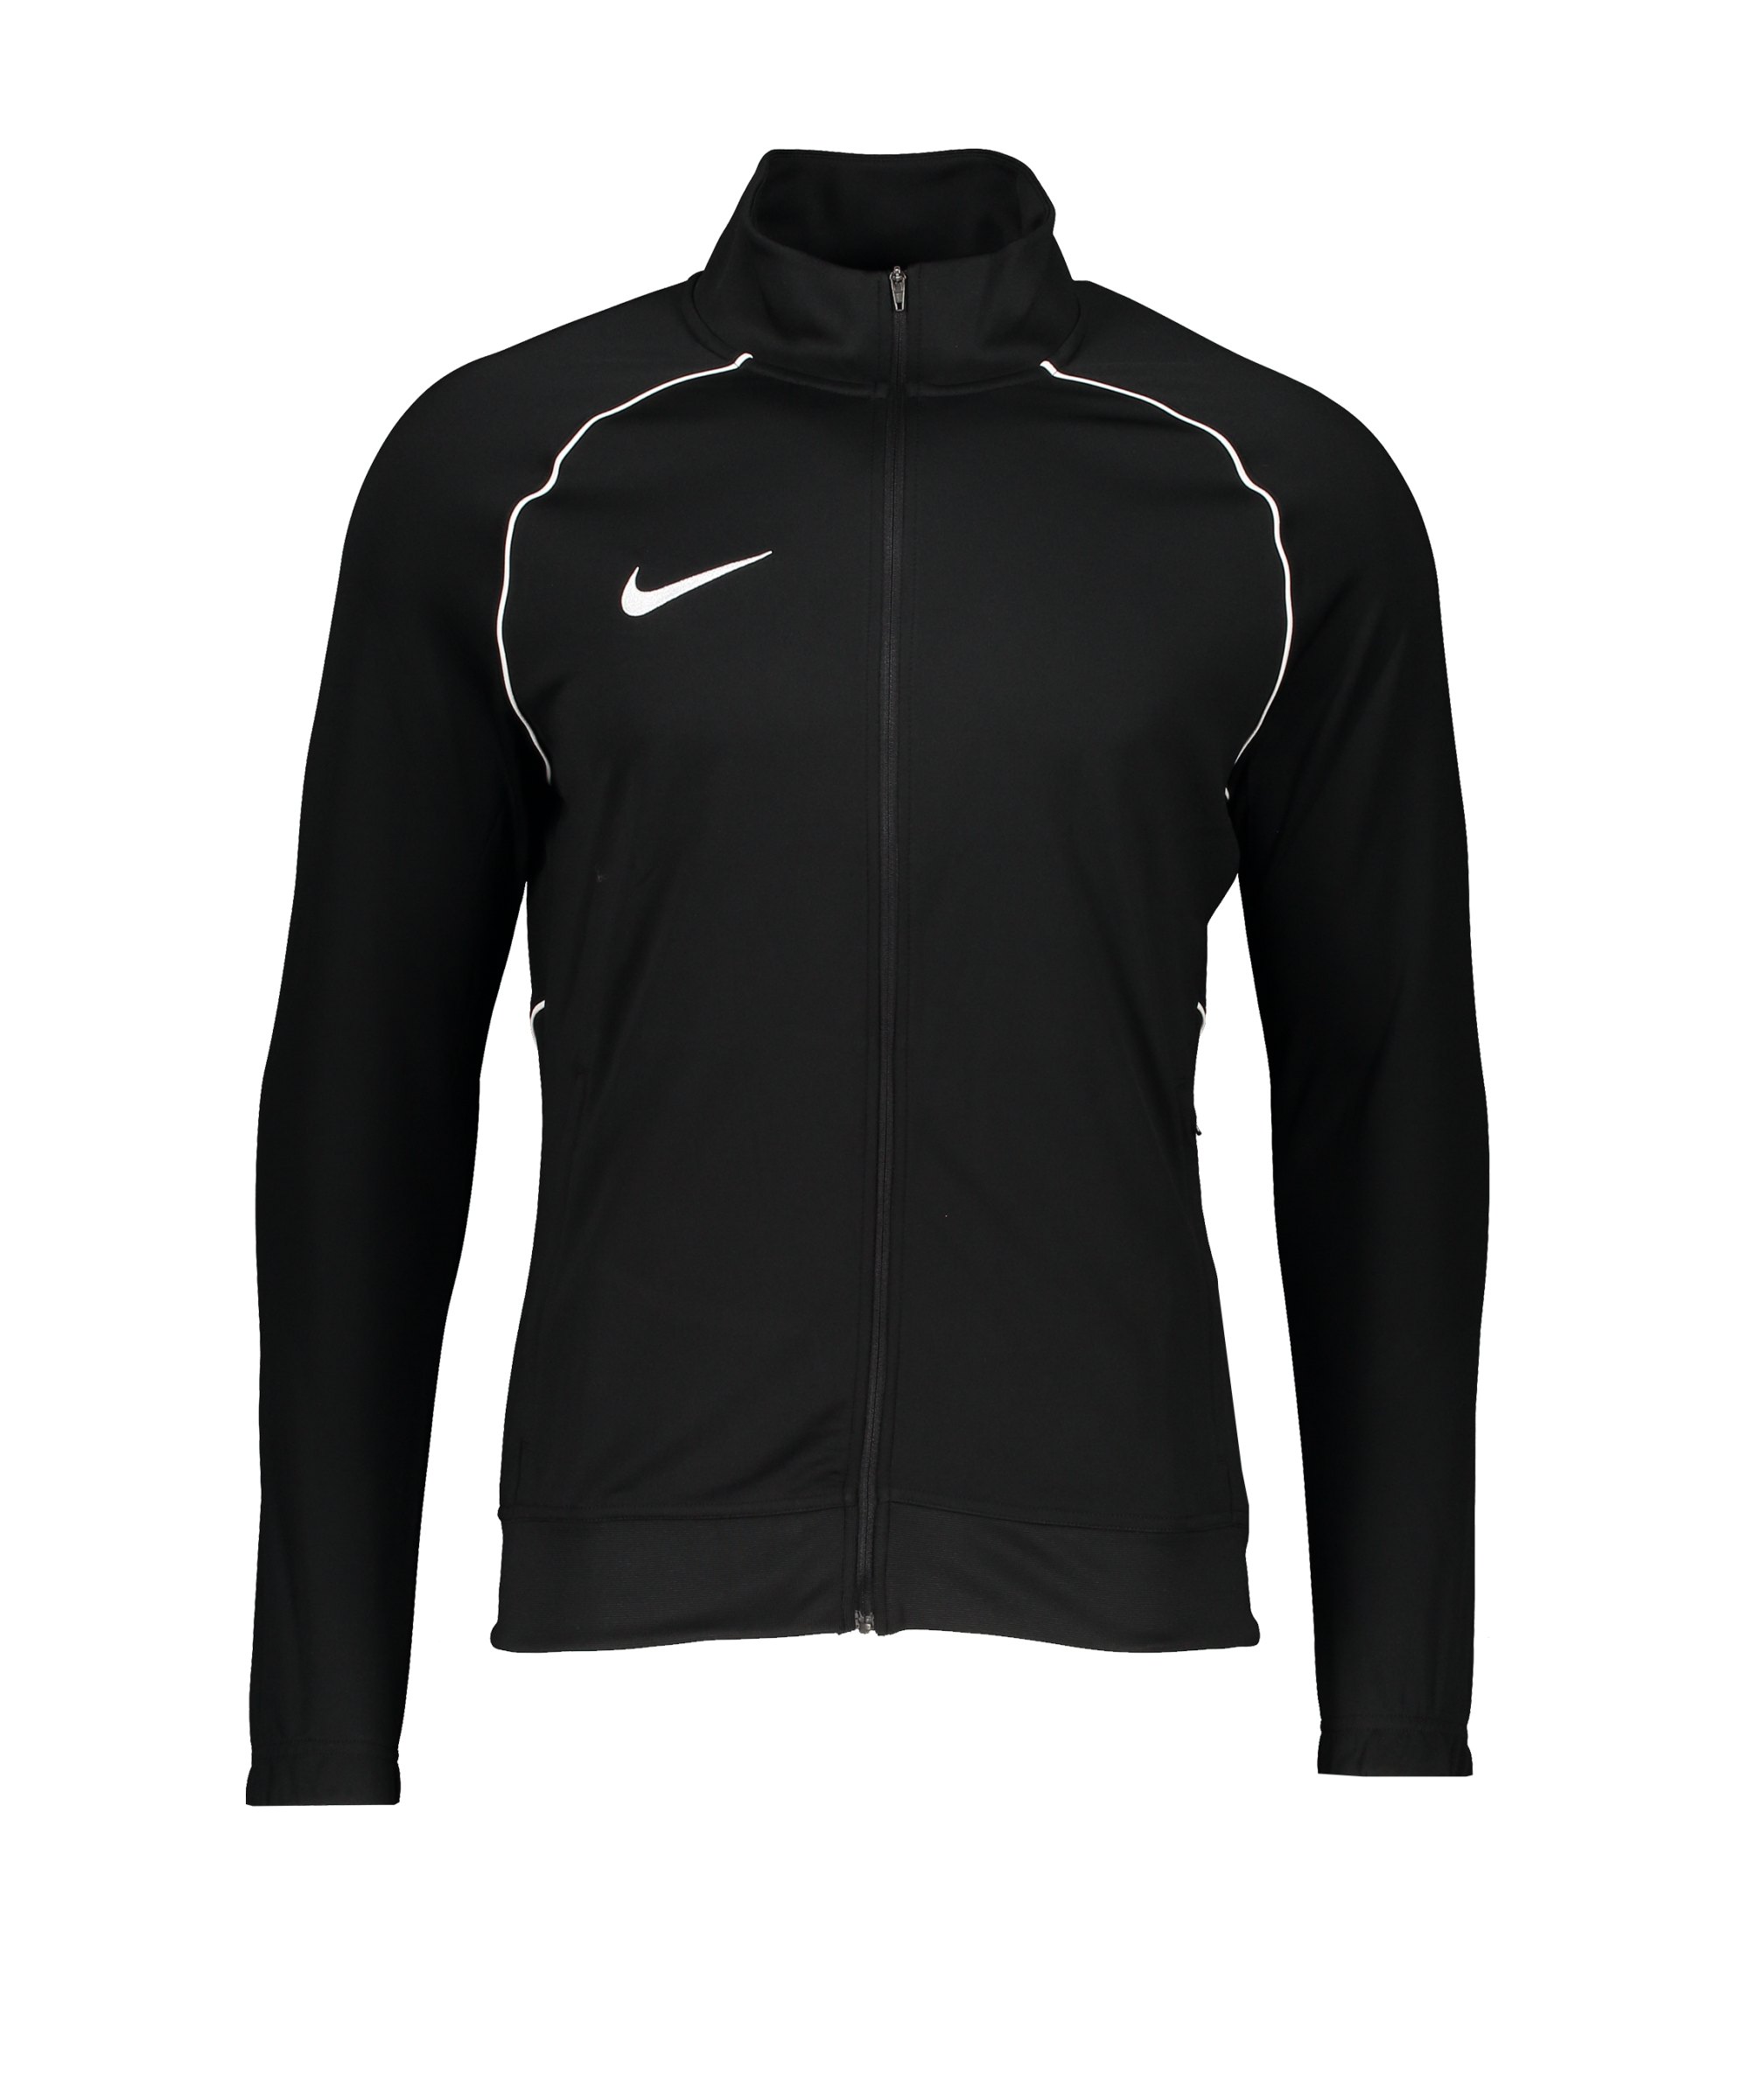 Nike Academy Pro Trainingsjacke Schwarz F010 - schwarz